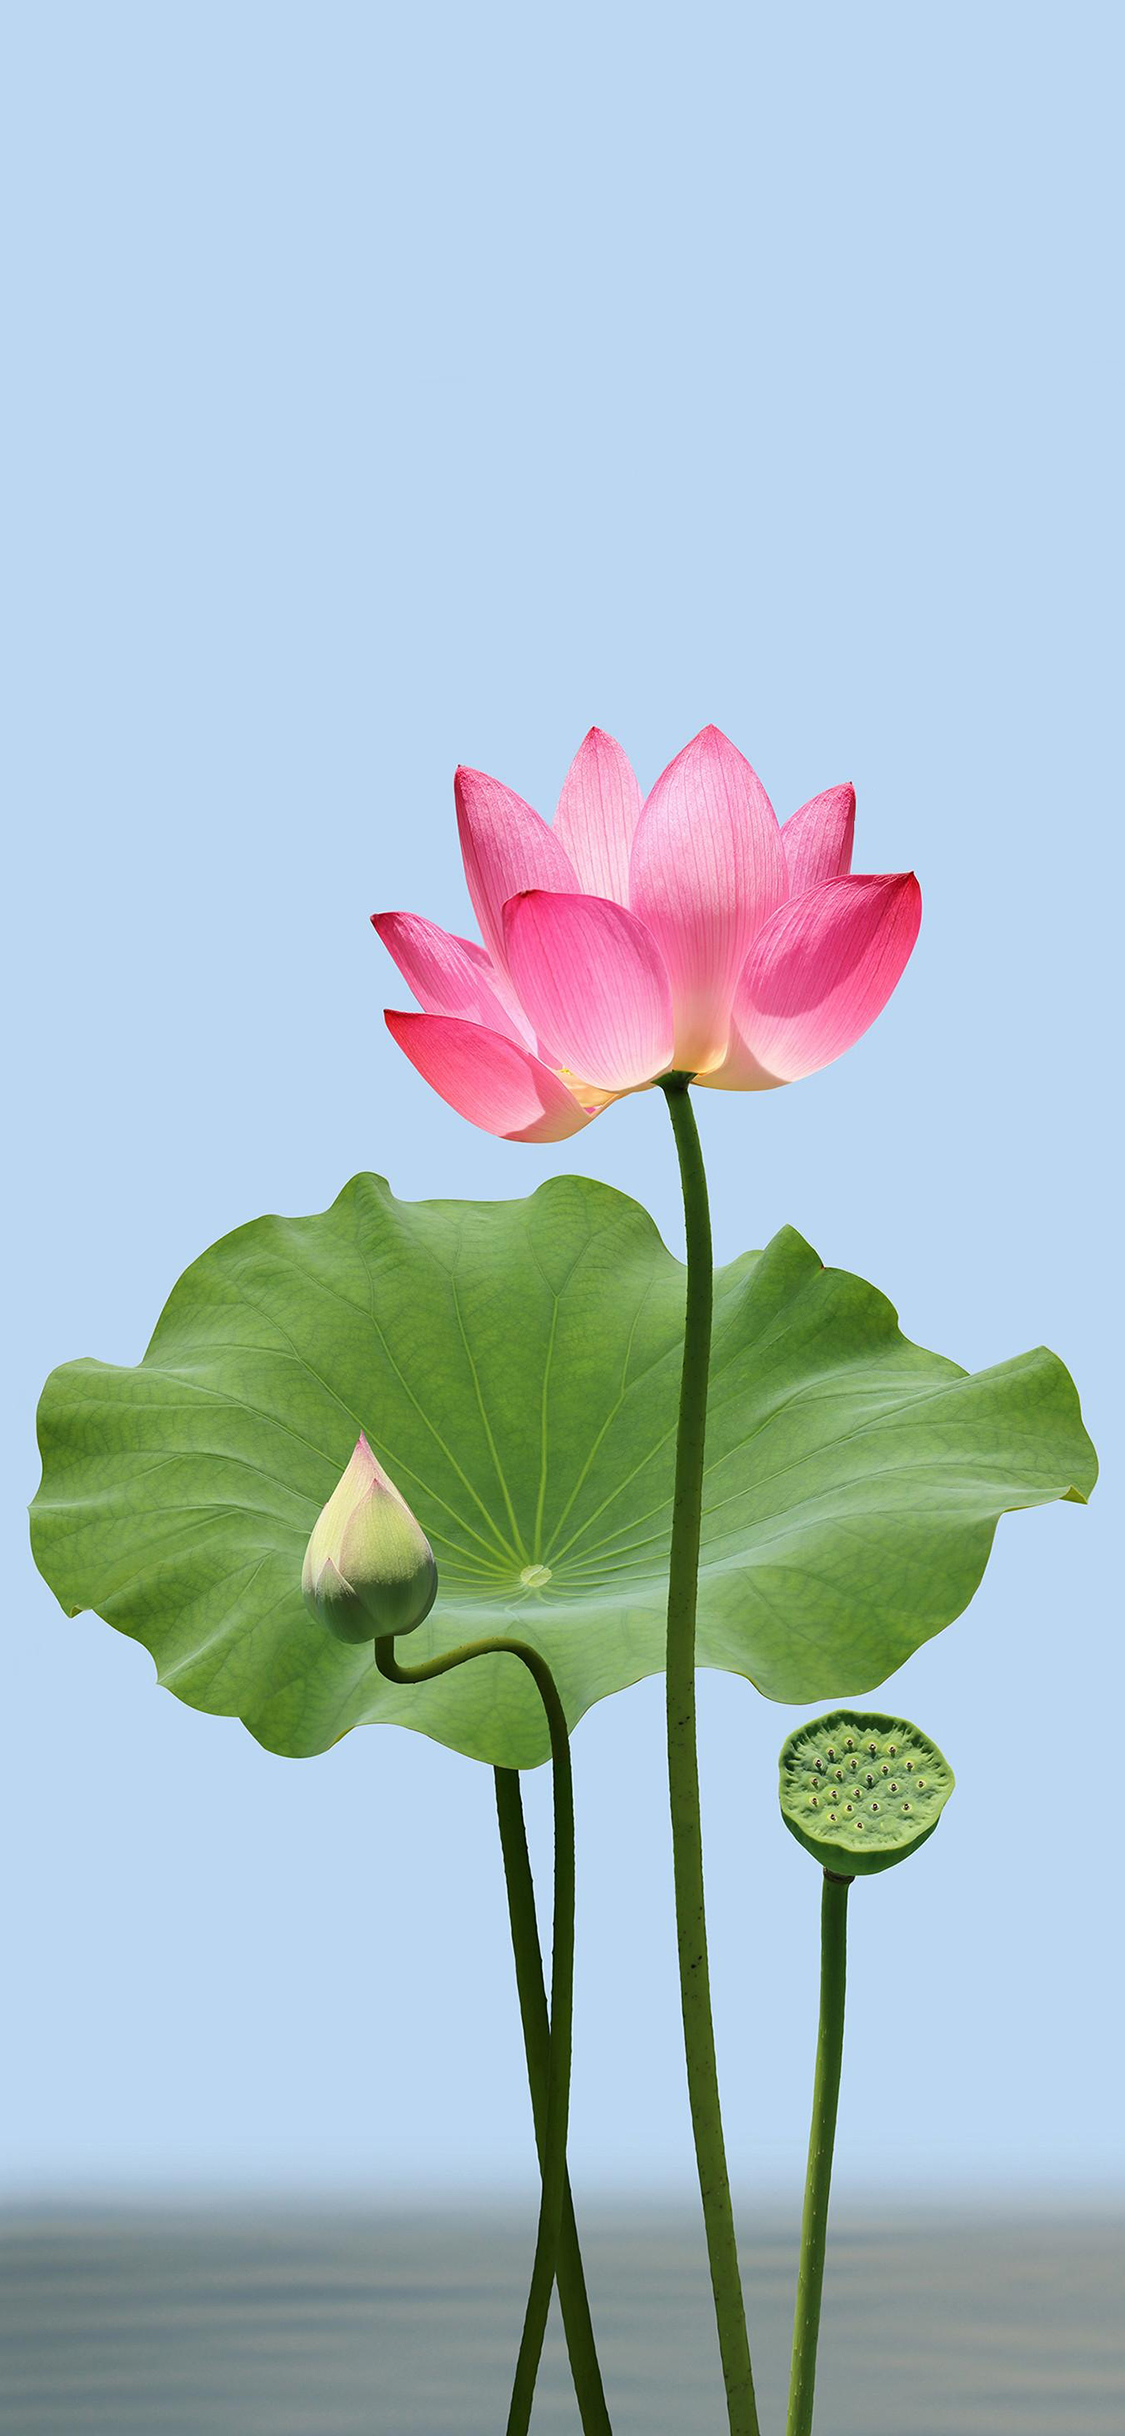 Hình nền hoa sen cực đẹp cho iPhone | Hoa sen, Hình nền hoa, Thực vật